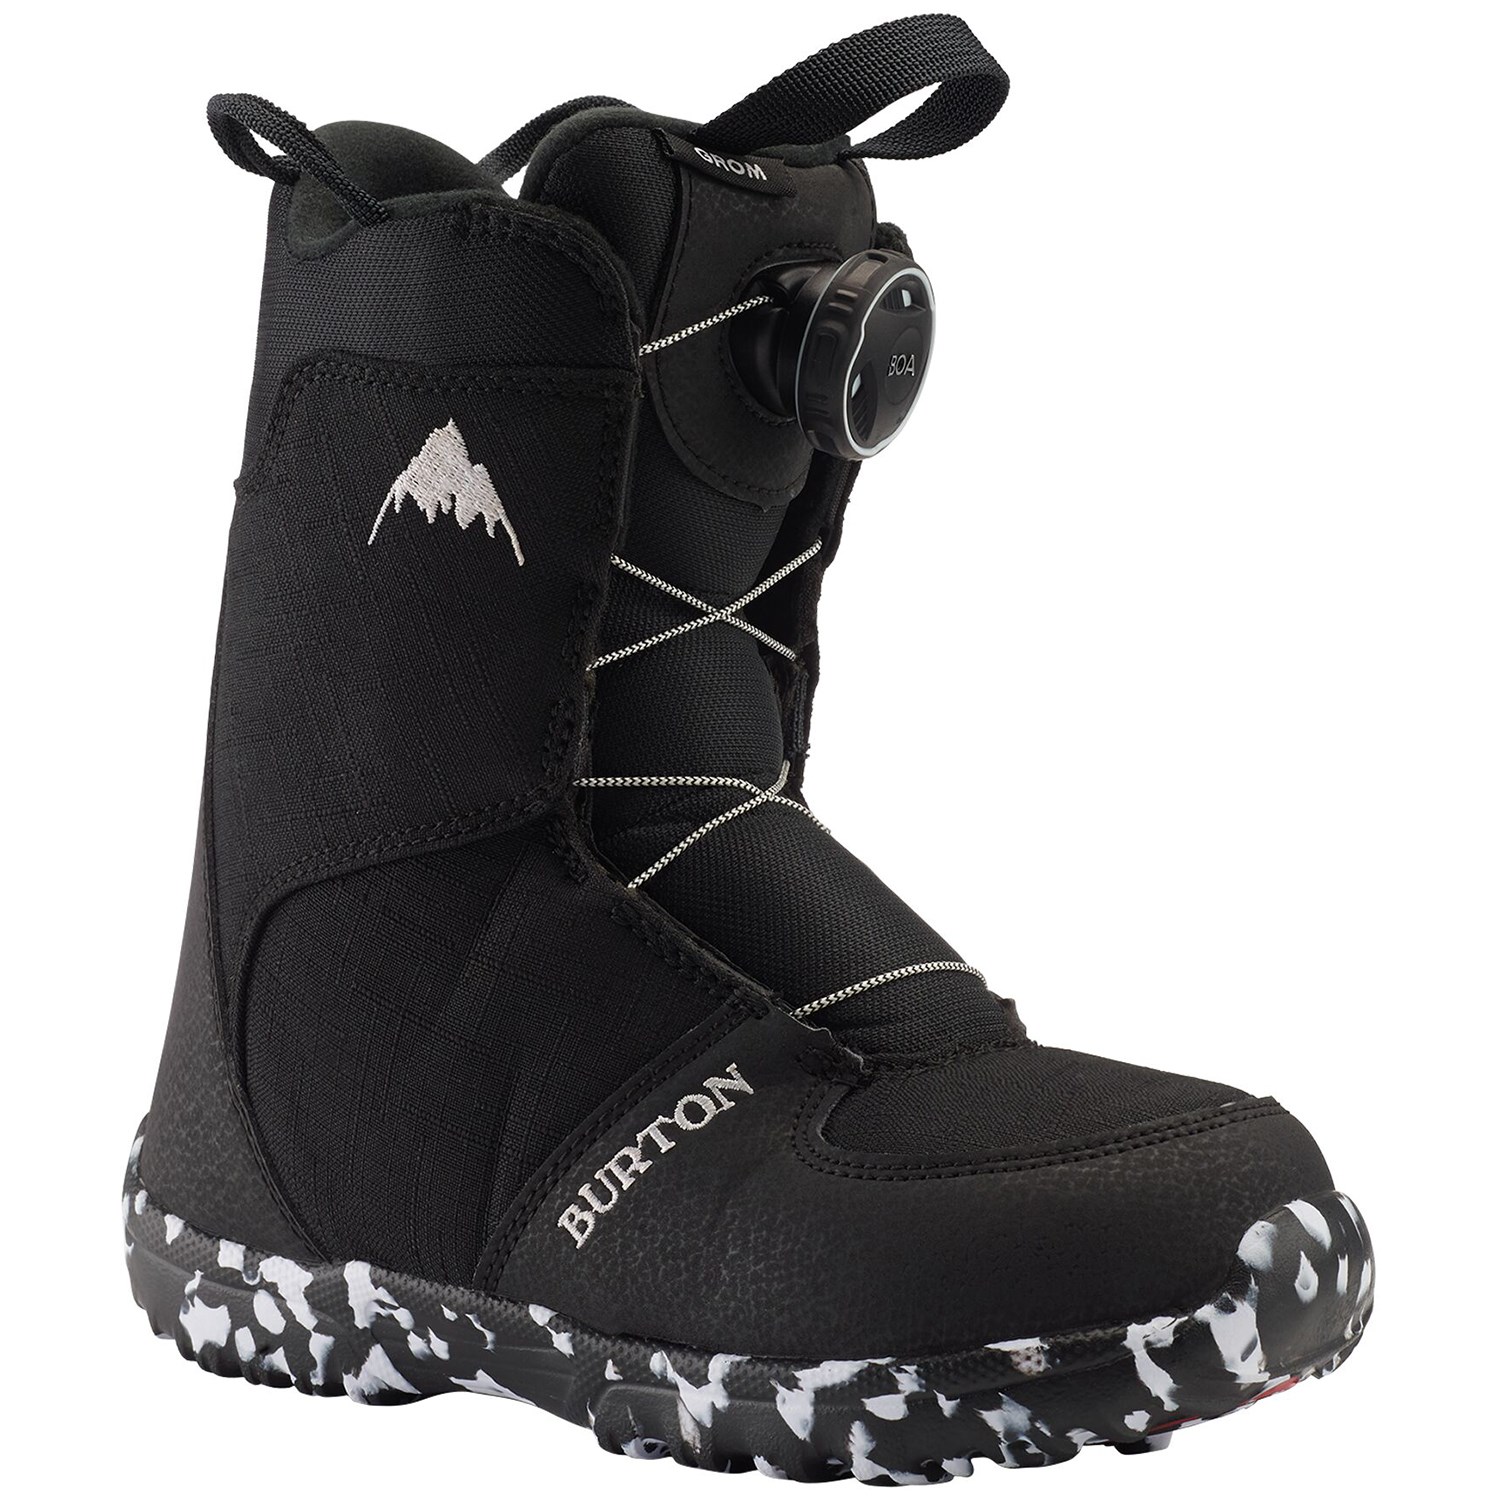 Ботинки для сноубординга Burton Grom Boa, черный детские сноубордические ботинки burton grom boa р 11c white